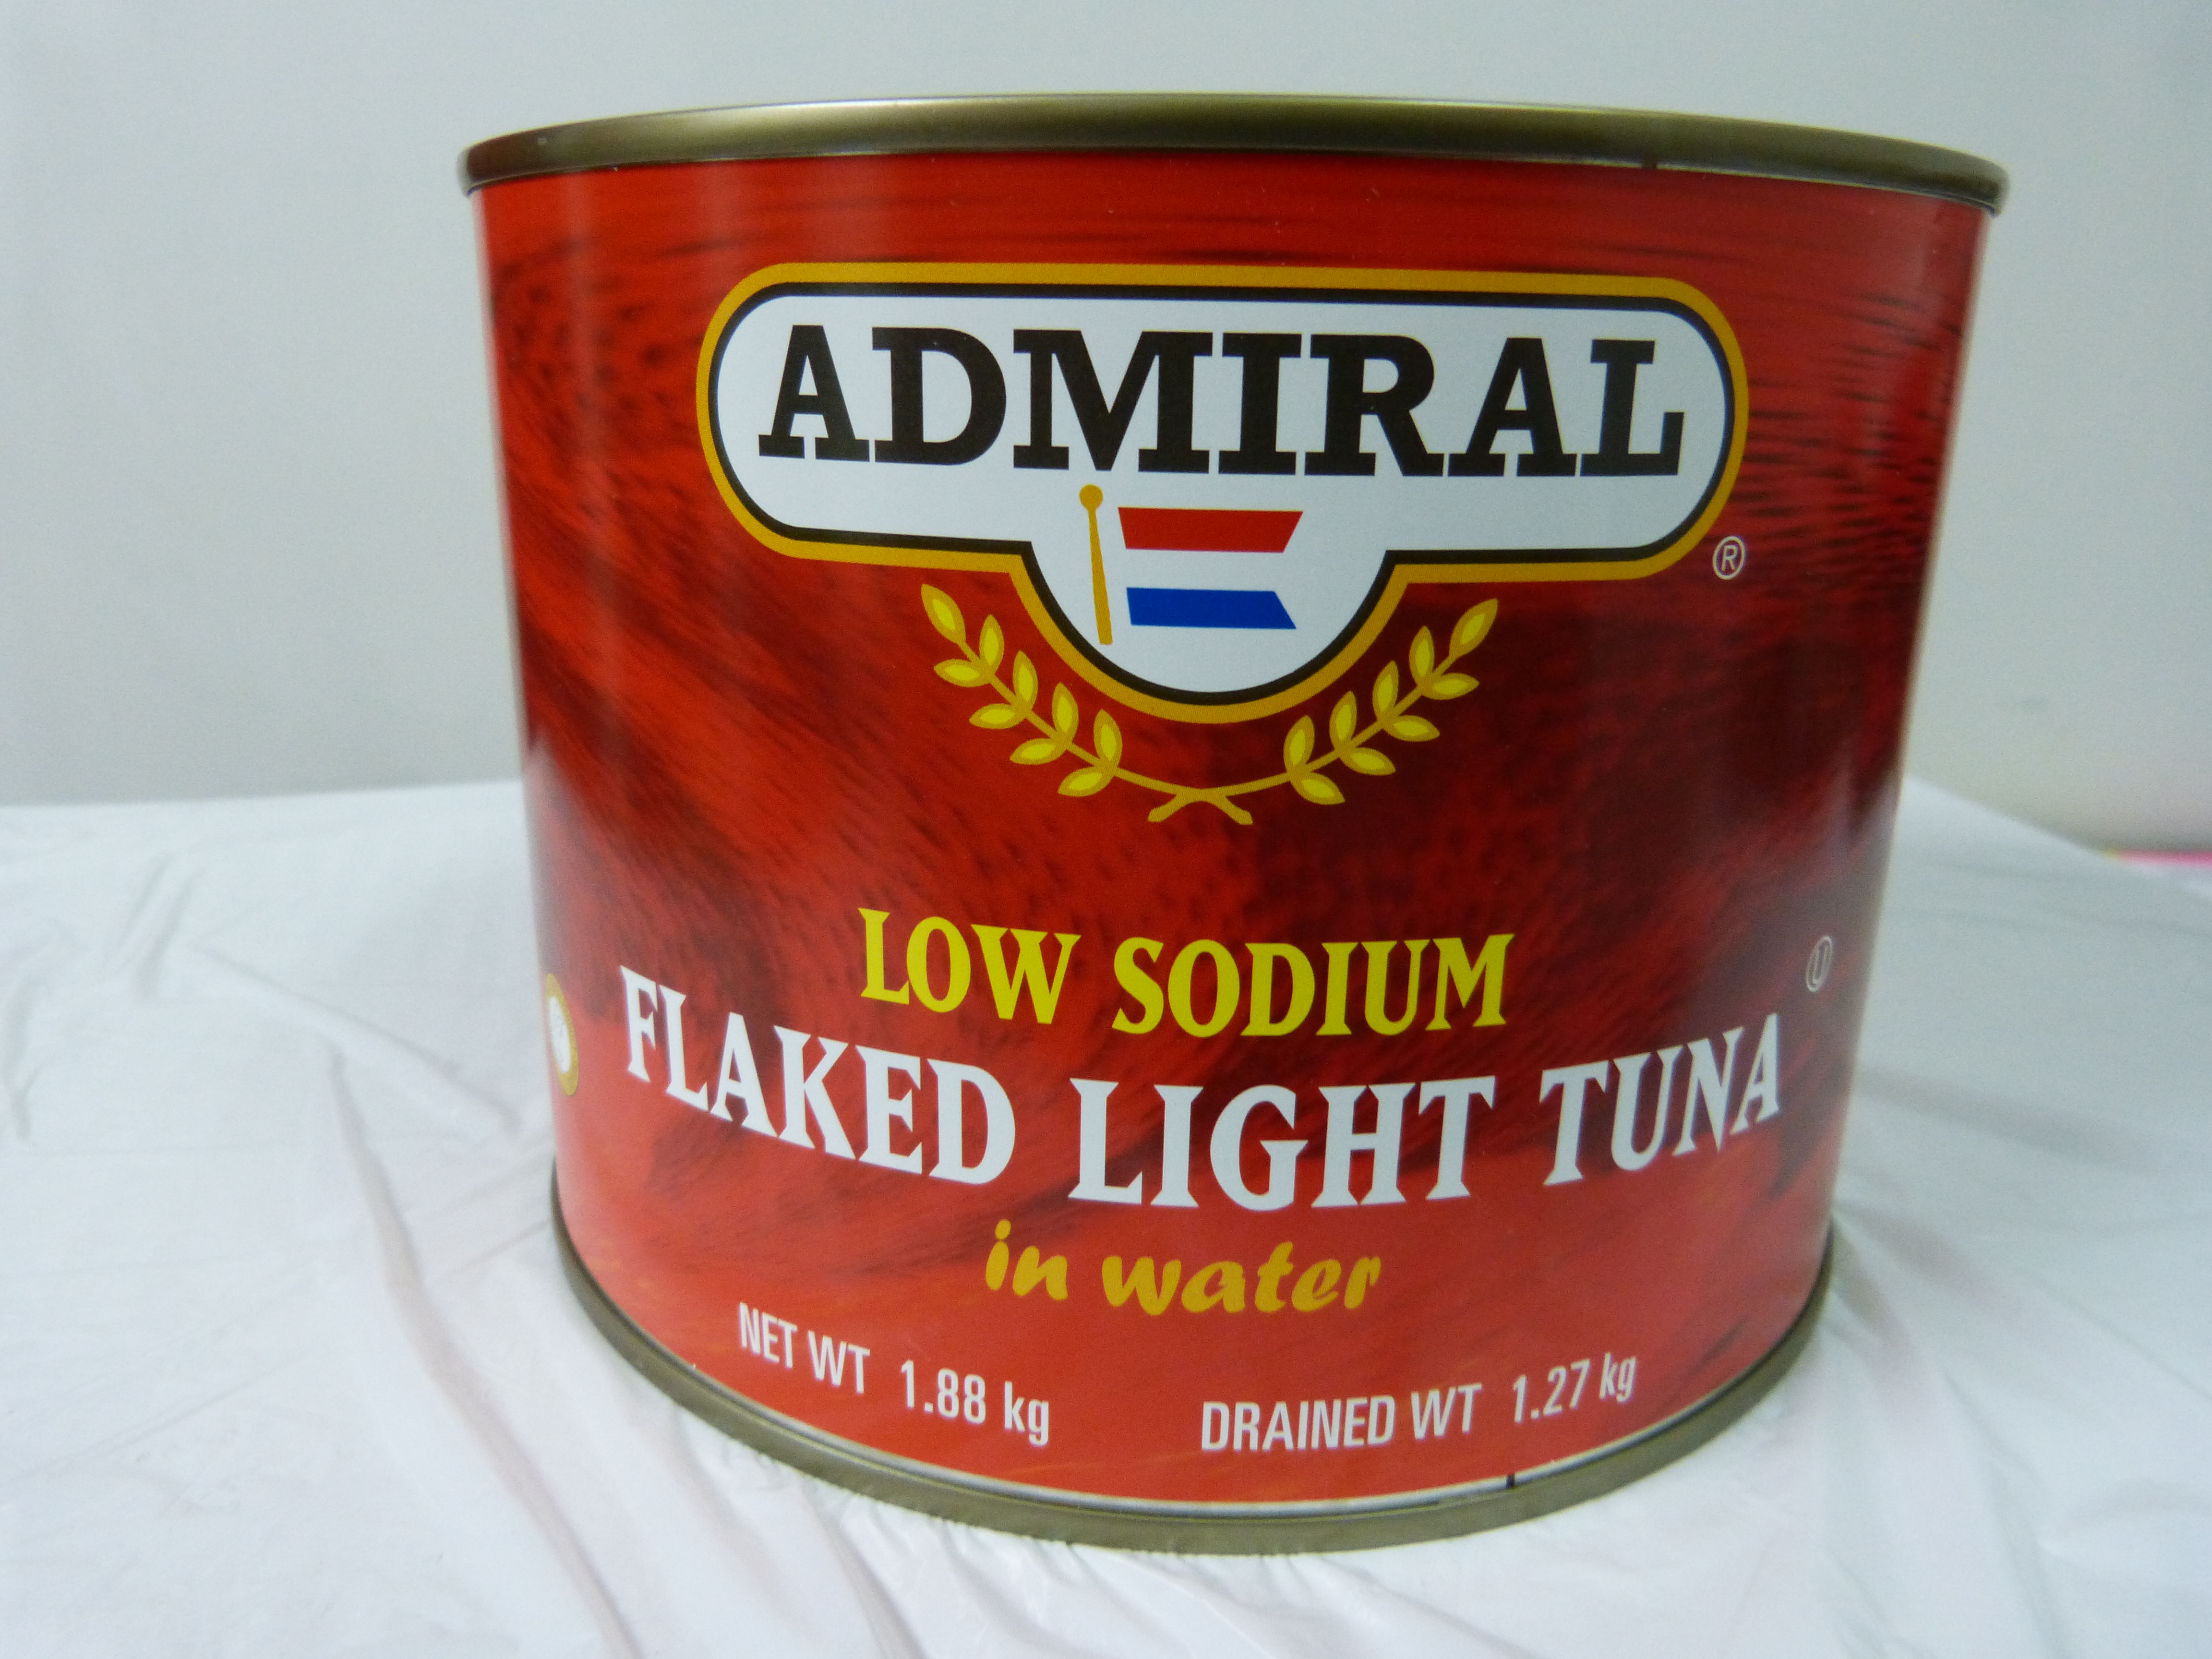 tuna flake light in water 6/1.88kg